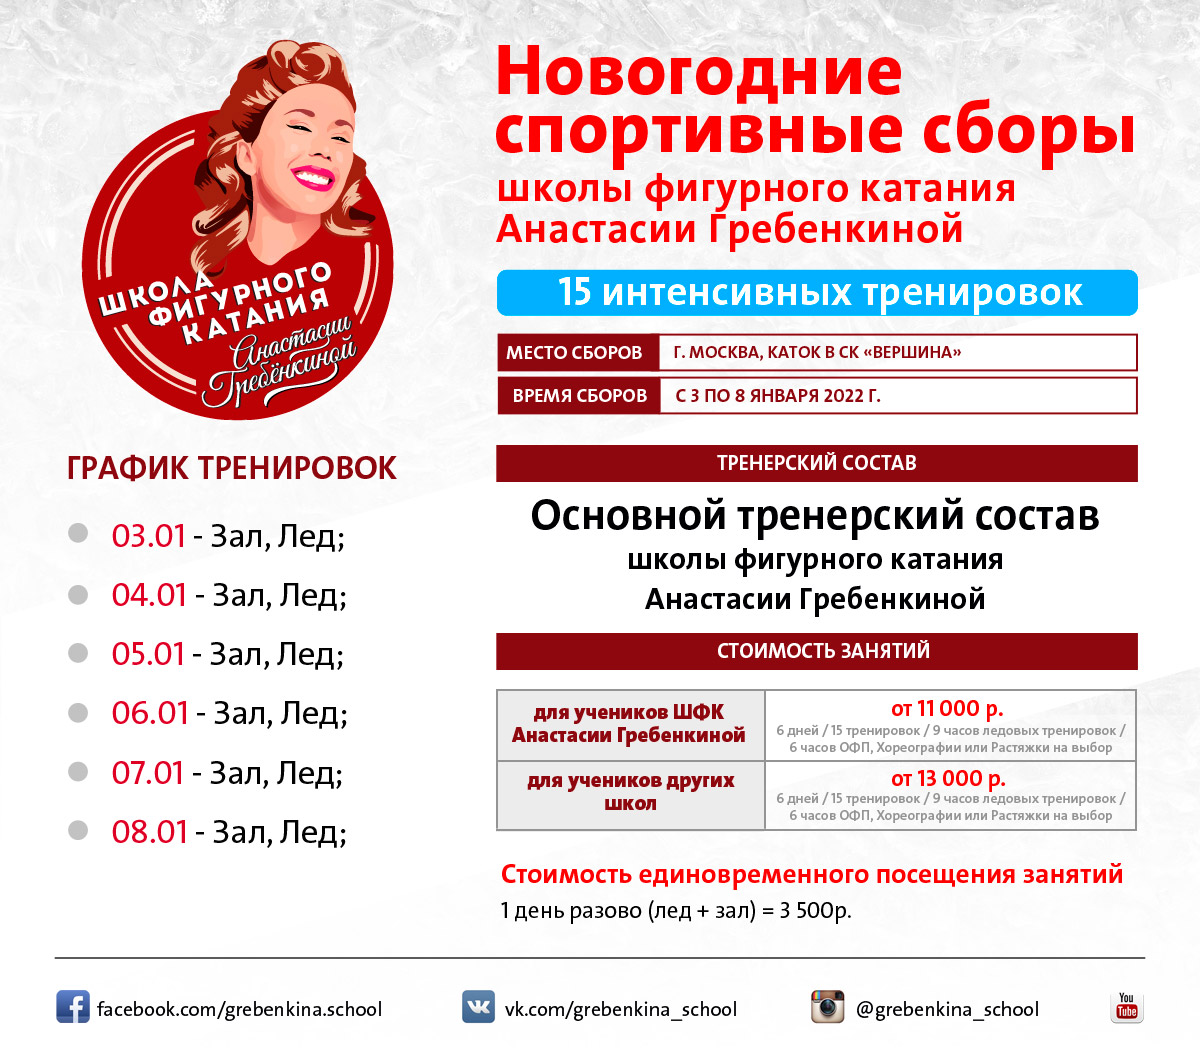 Новогодние ледовые сборы для фигуристов с 3 по 8 января в СК Вершина